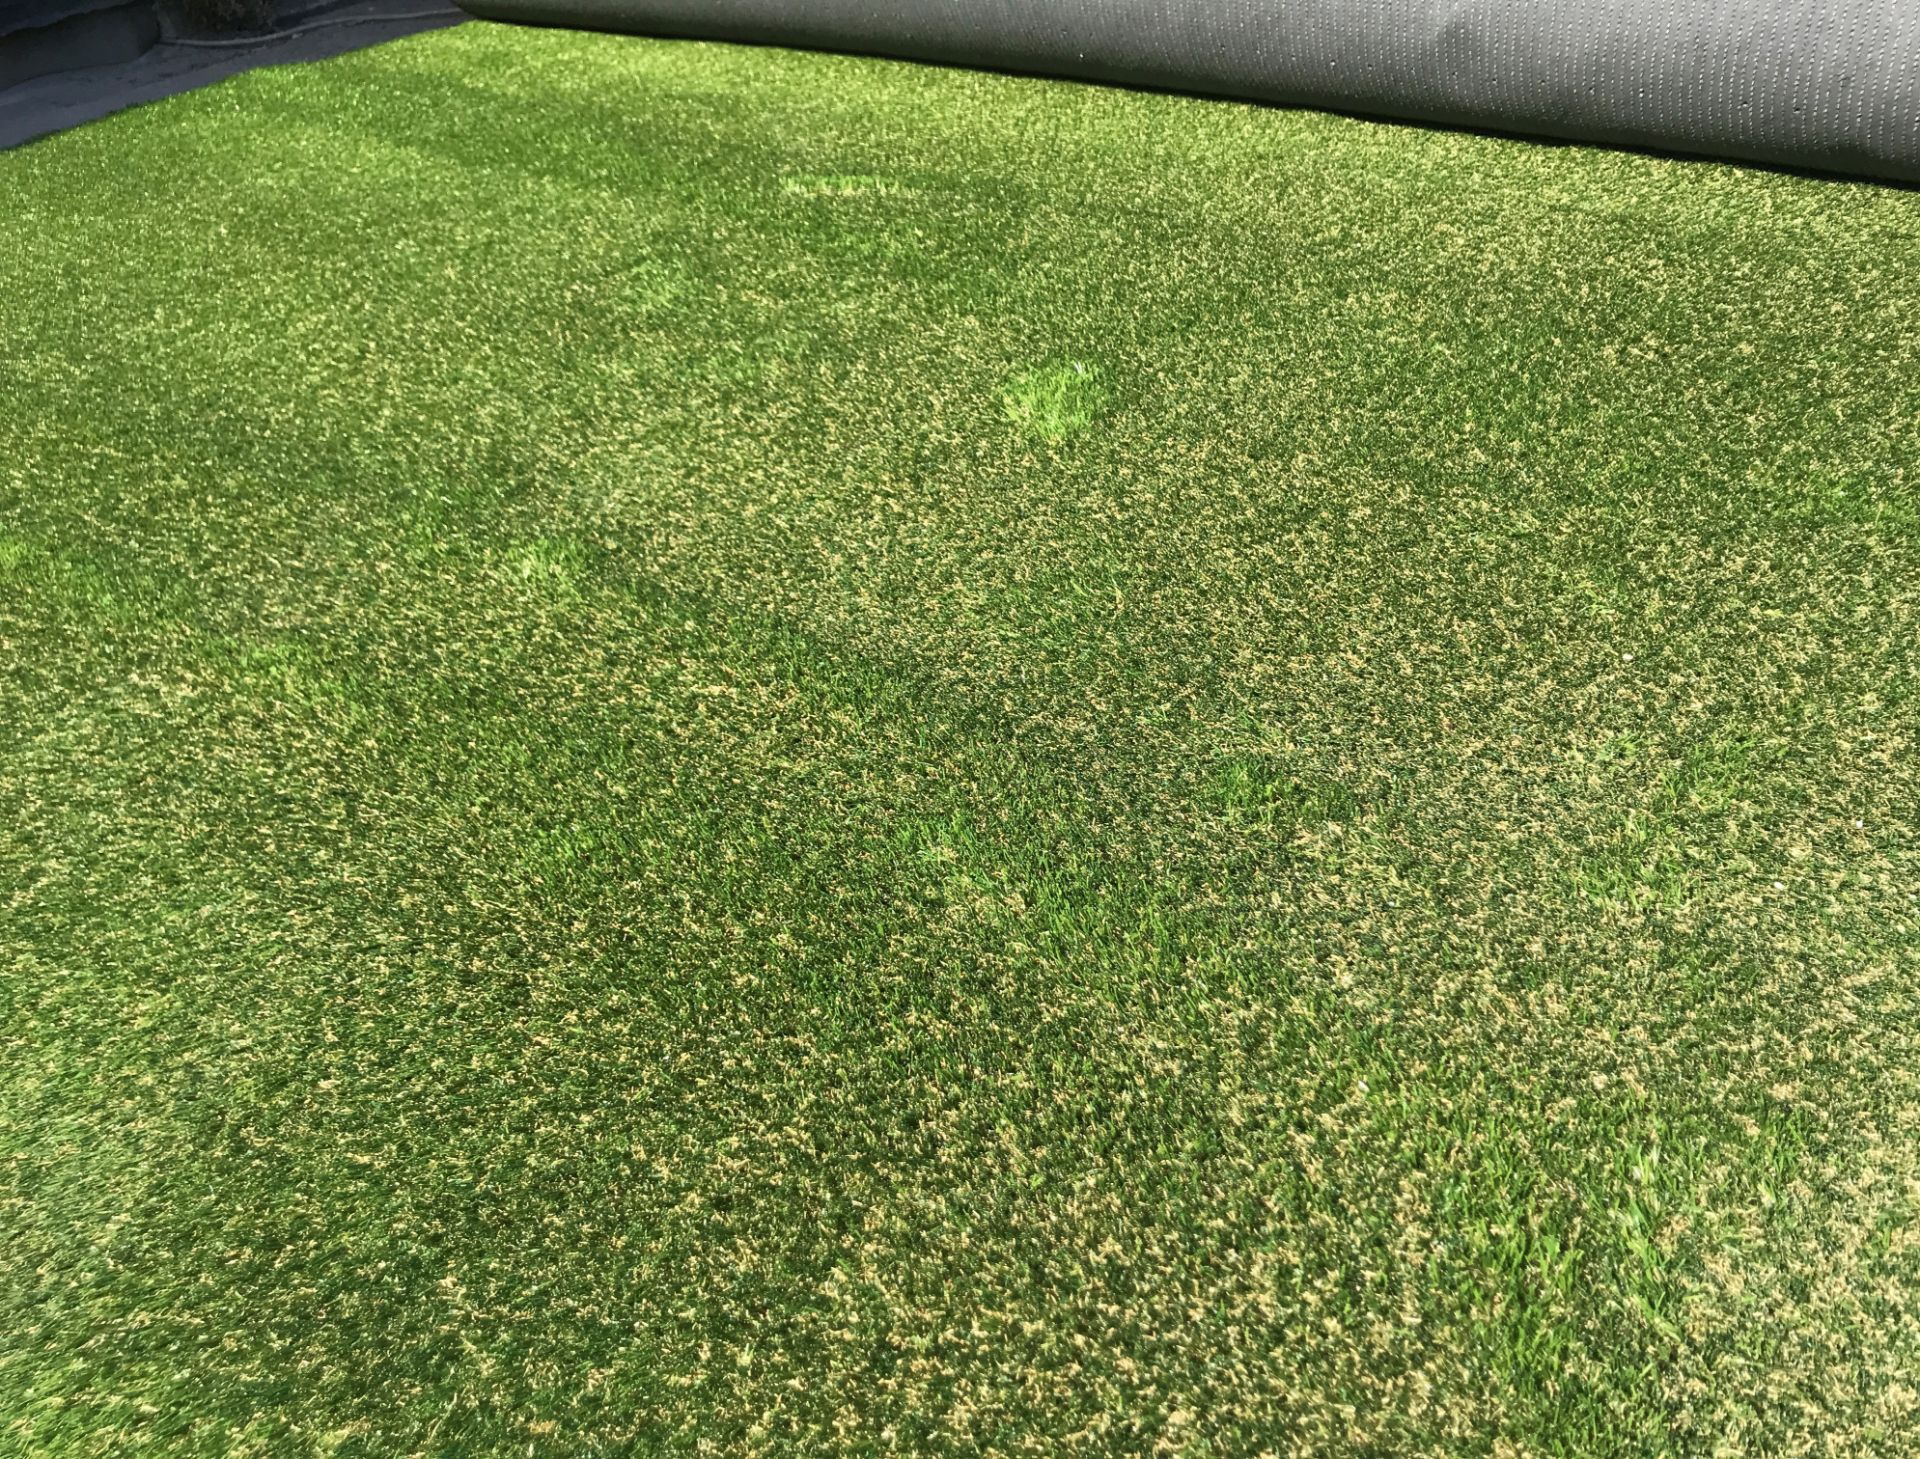 1 x Playrite Nearly Grass - Artificial Grass/Turf - 30X4 Meter Roll - Ref: NWF022 - CL912 - NO VAT